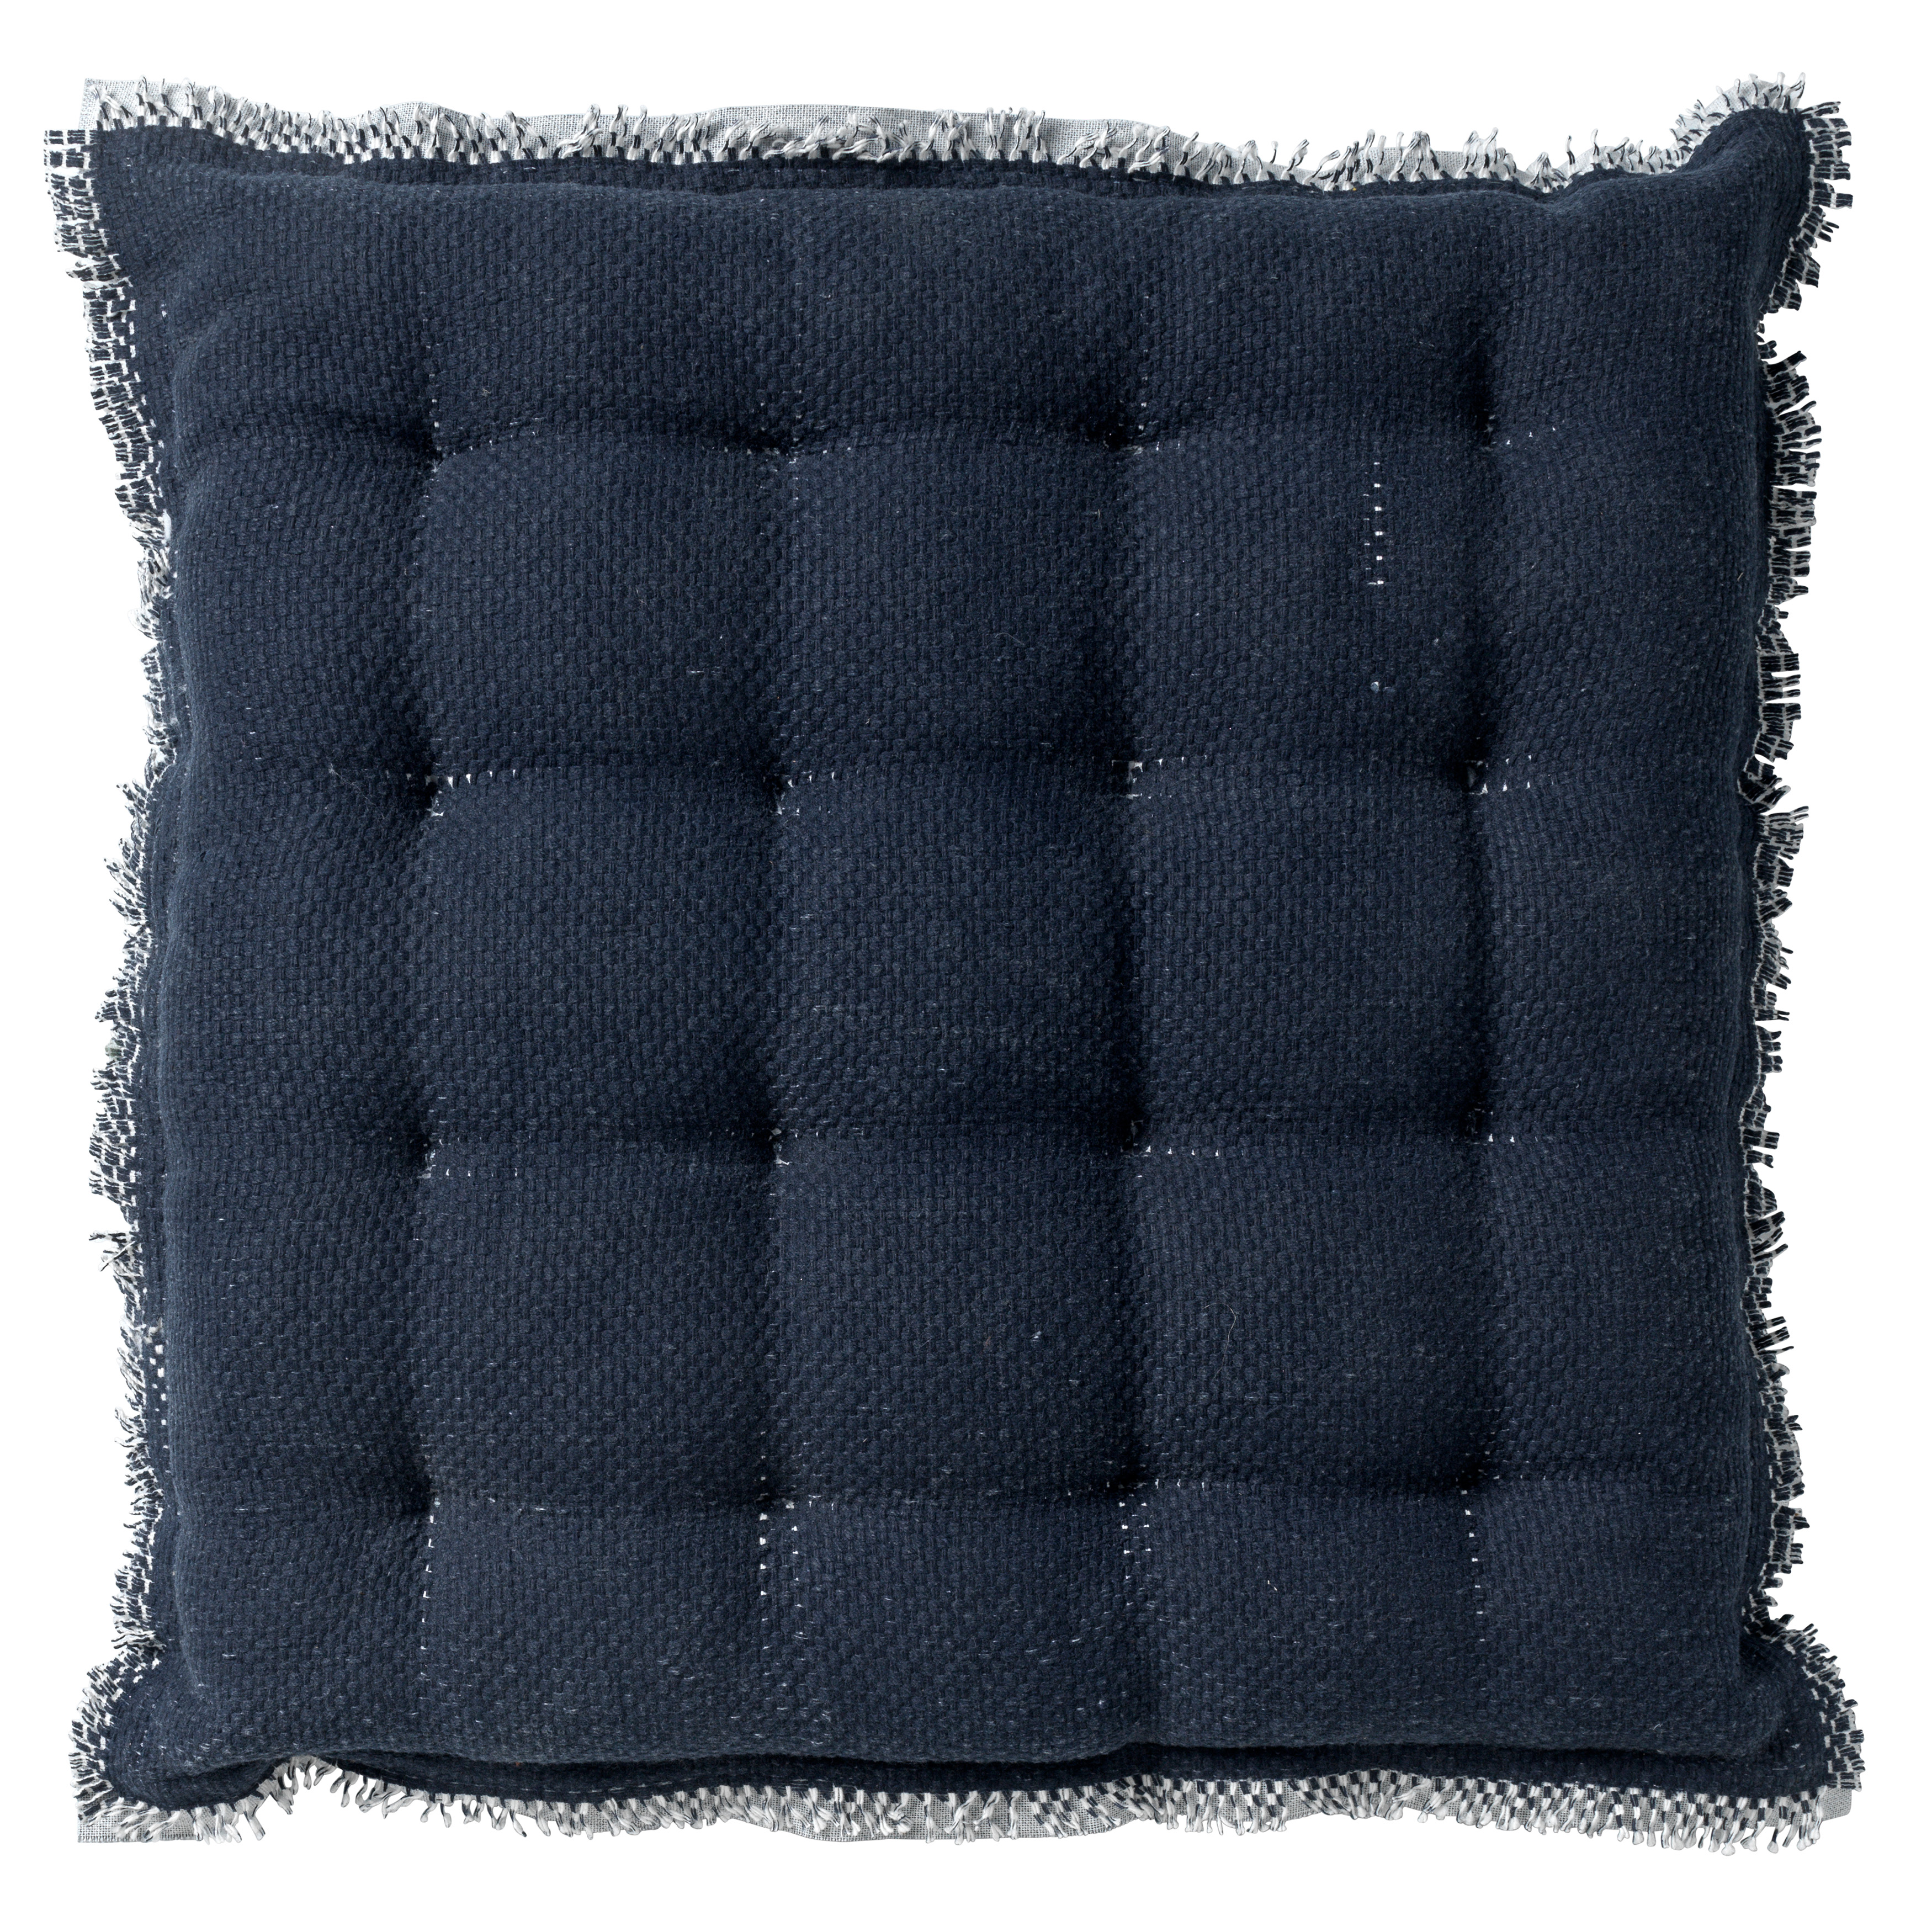 Galette de chaise Bleu en coton 40x40 cm